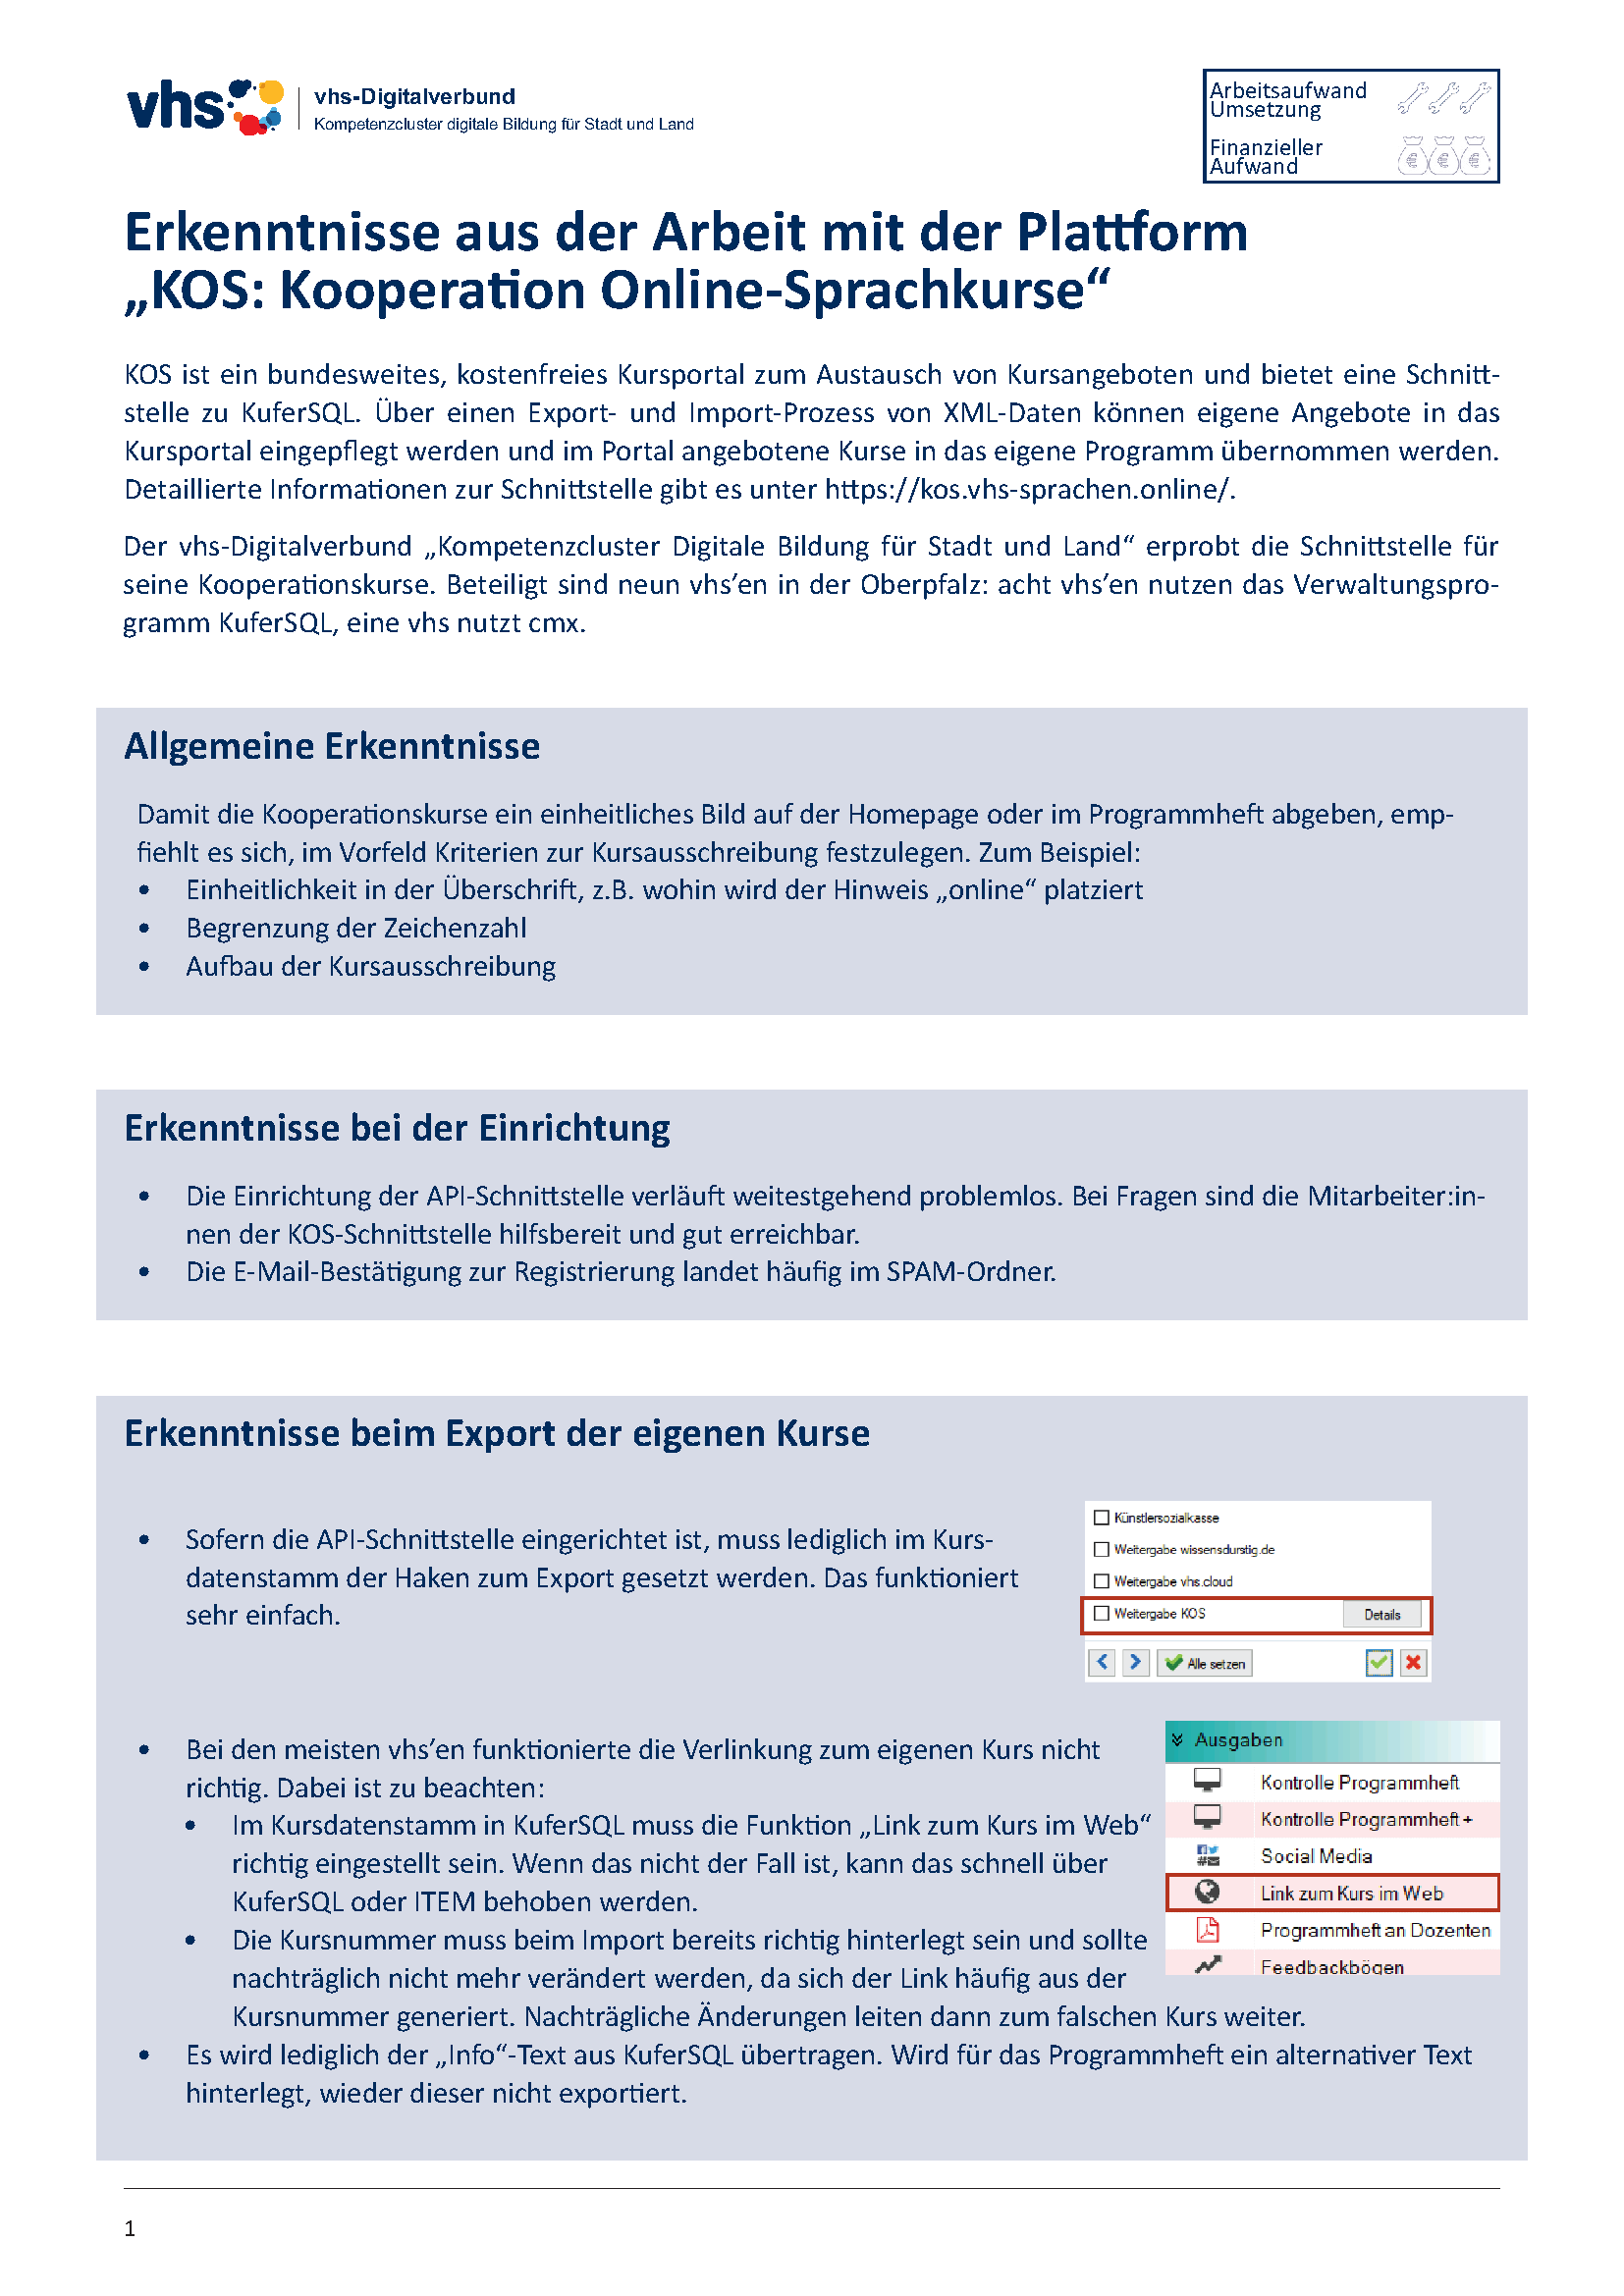 Deckblatt Kompetenzcluster: Erkenntnisse Plattform "Kooperation Online-Sprachkurse"